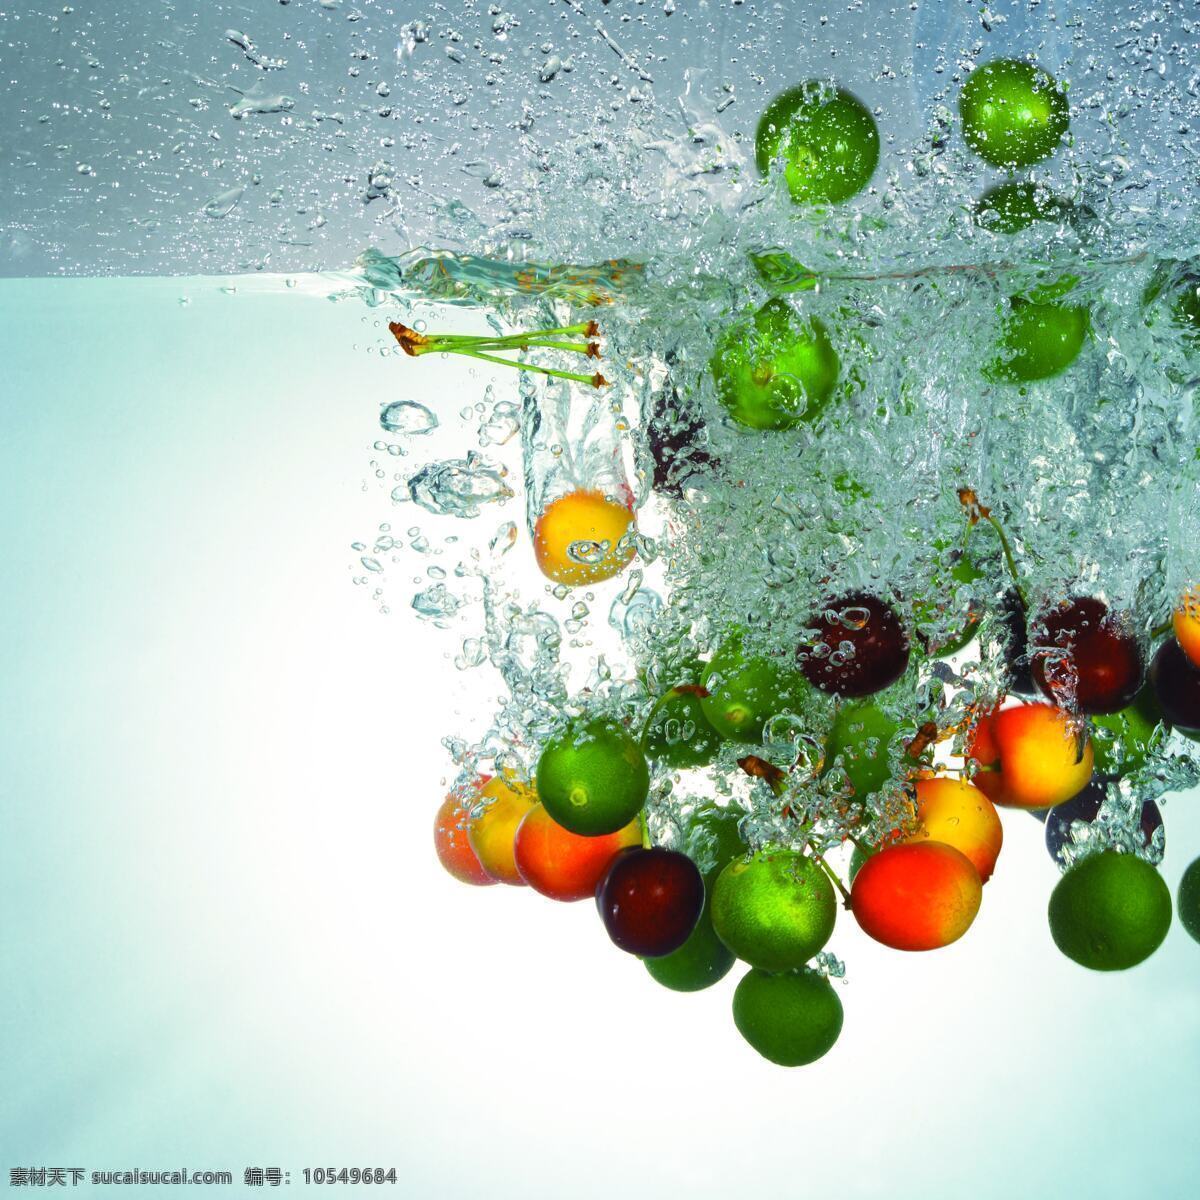 水果入水 动感水果 柠檬入水 小水果 照片 生物世界